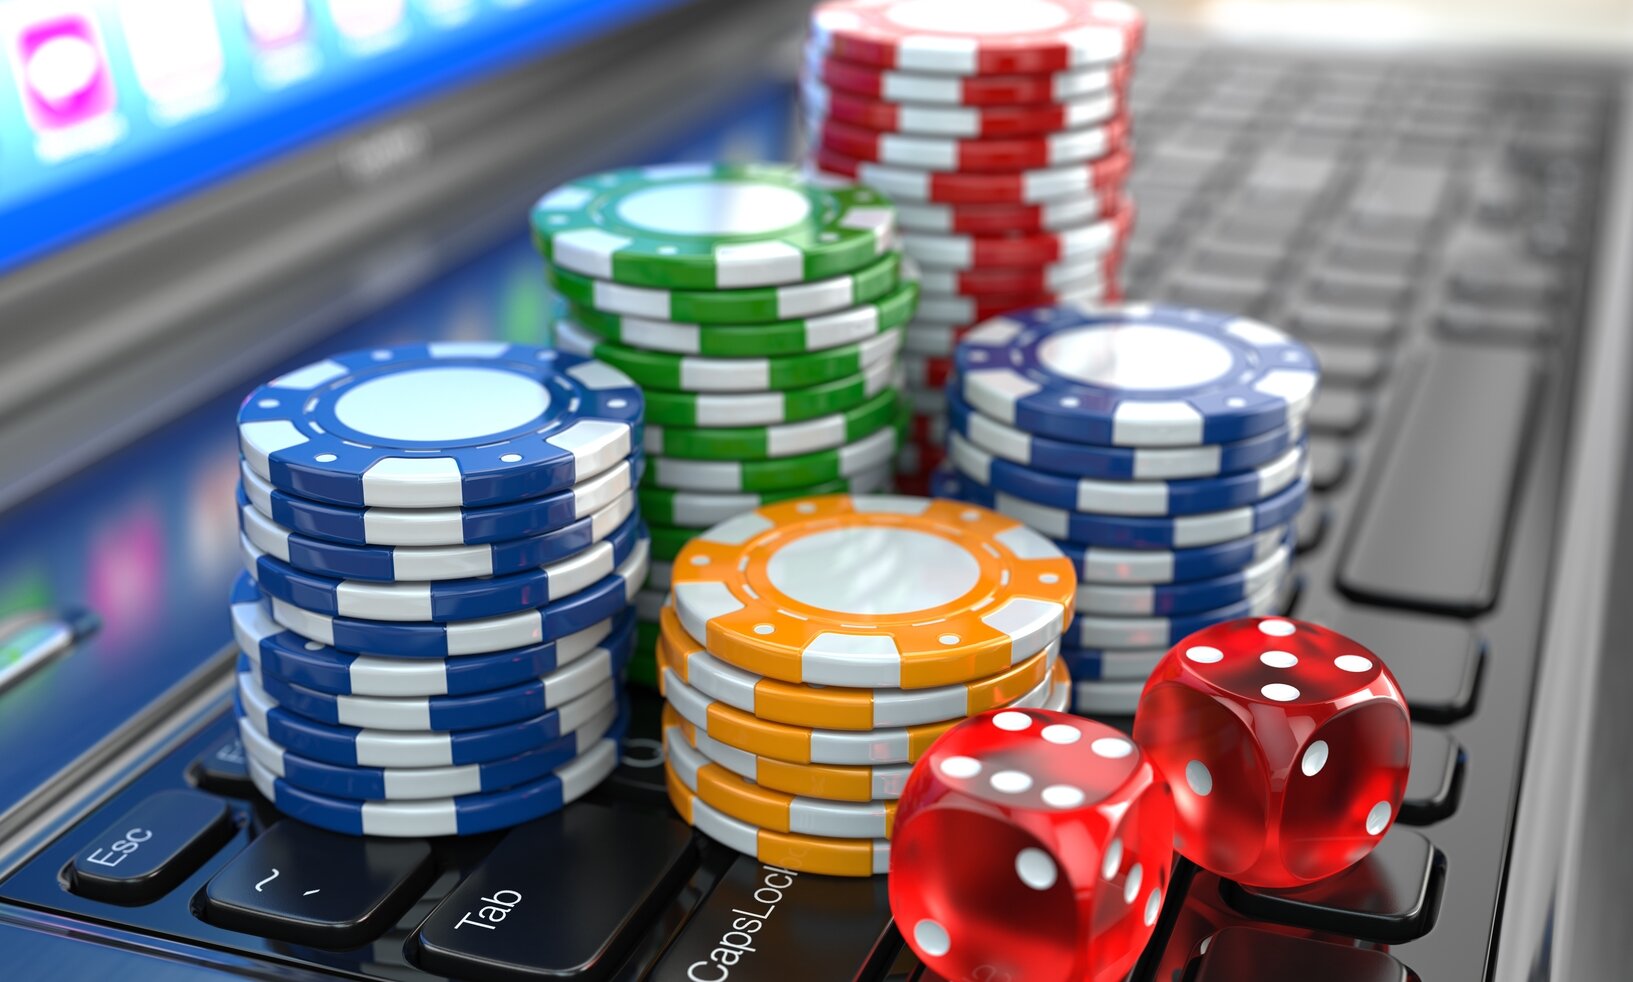 Какие надежные онлайн казино колумб игровые автоматы играть онлайн рейтинг слотов рф бесплатно